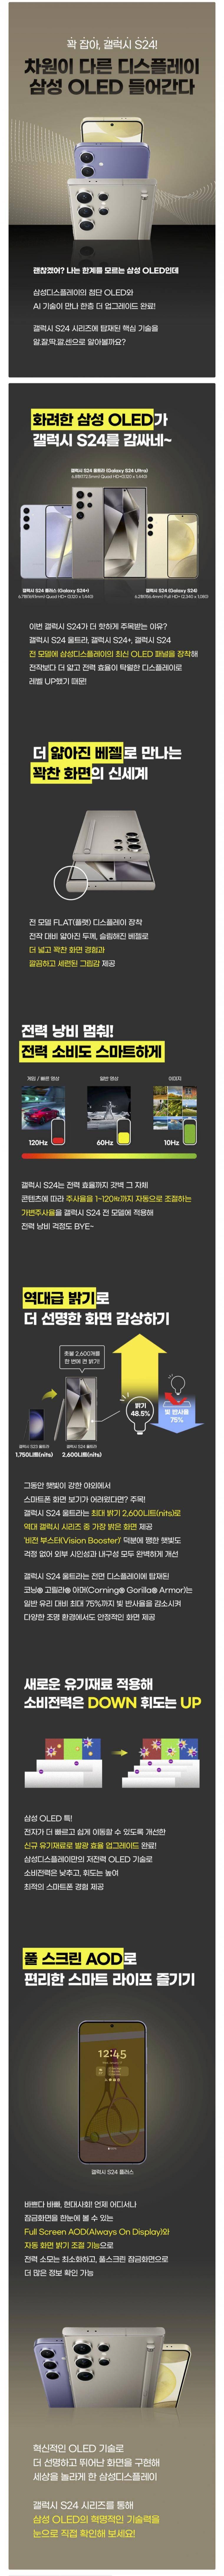 삼성 공식 홍보물 클라스